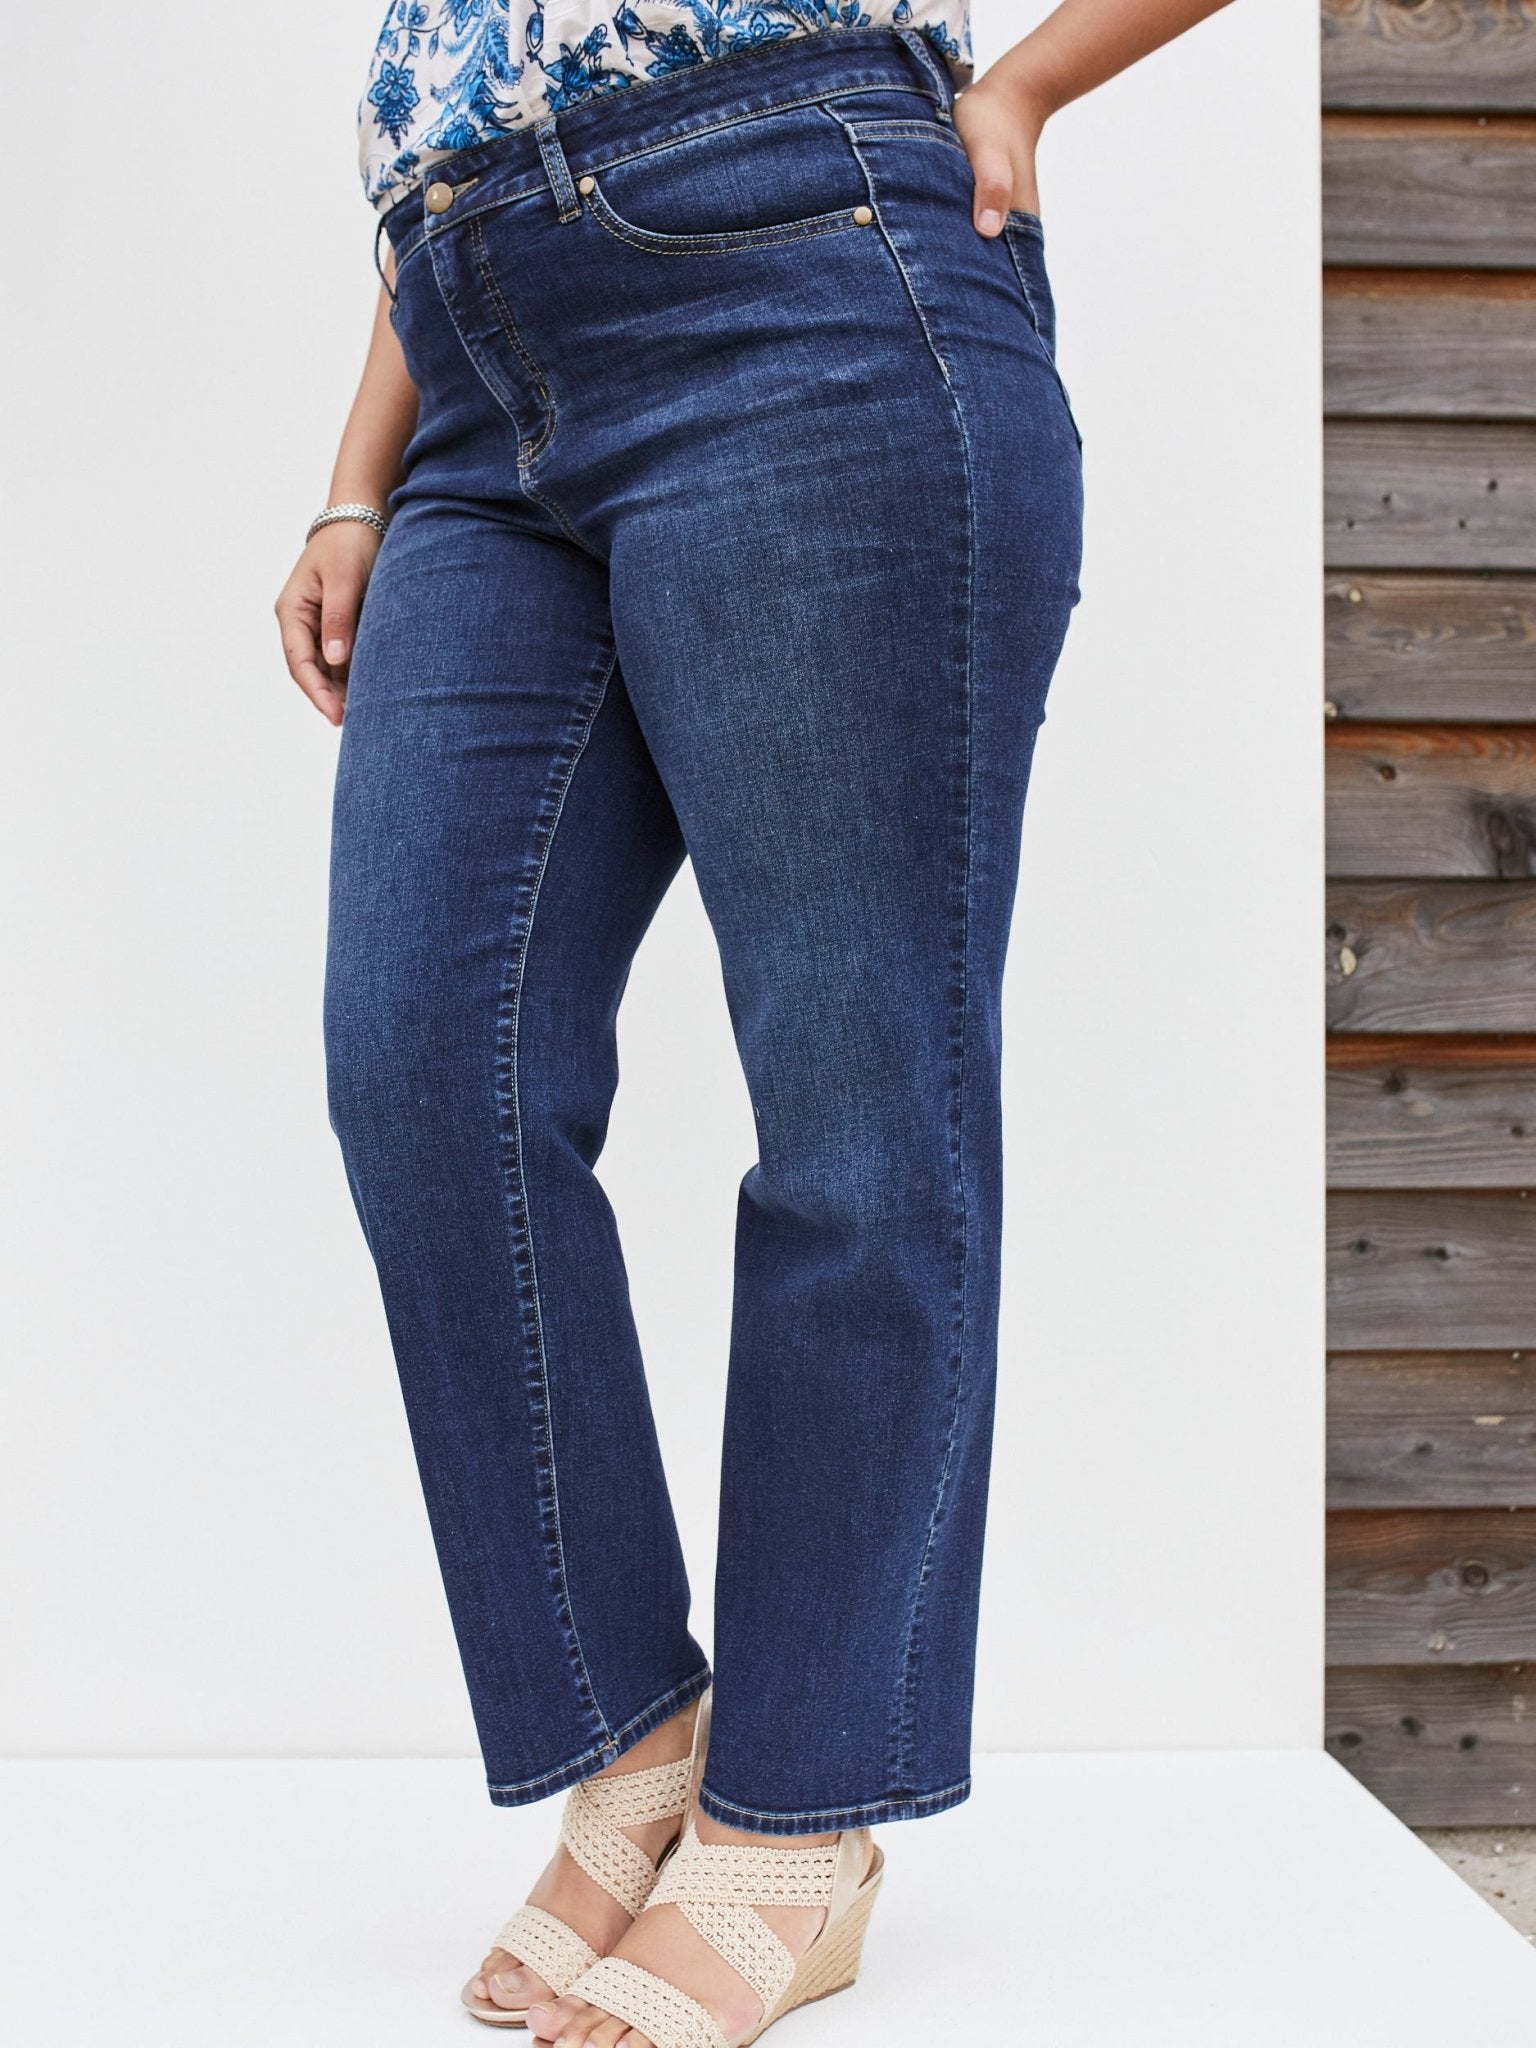 Westport Signature Straight Leg Denim Jeans - Plus - DressbarnClothing